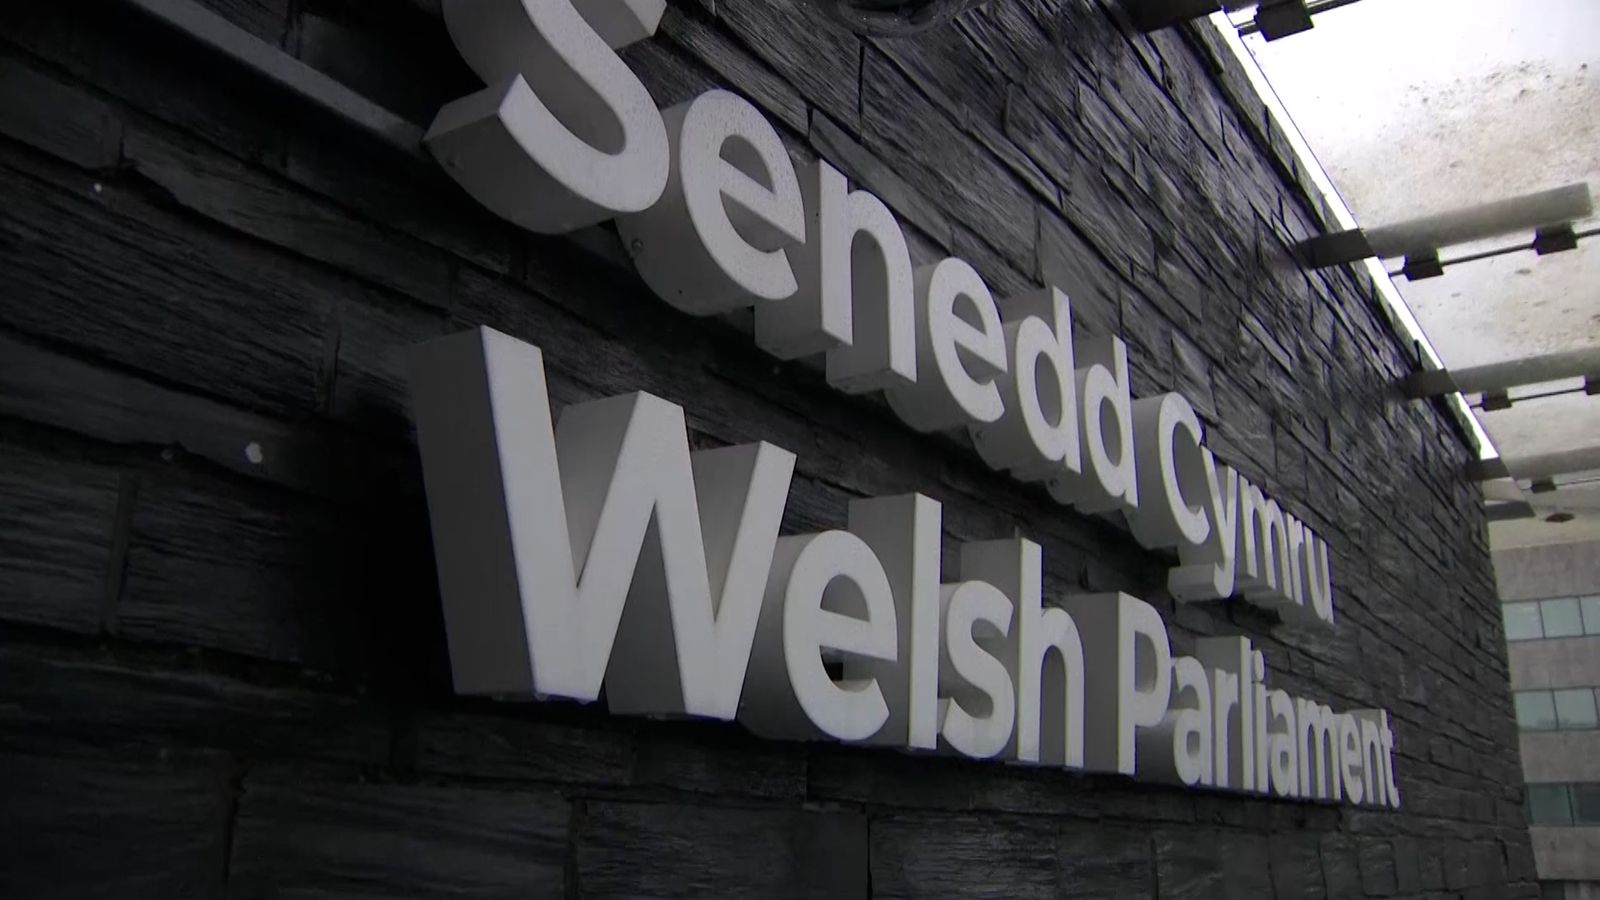 Квотите за равенство между половете в изборите в Welsh Senedd може да доведат до правни предизвикателства - доклад